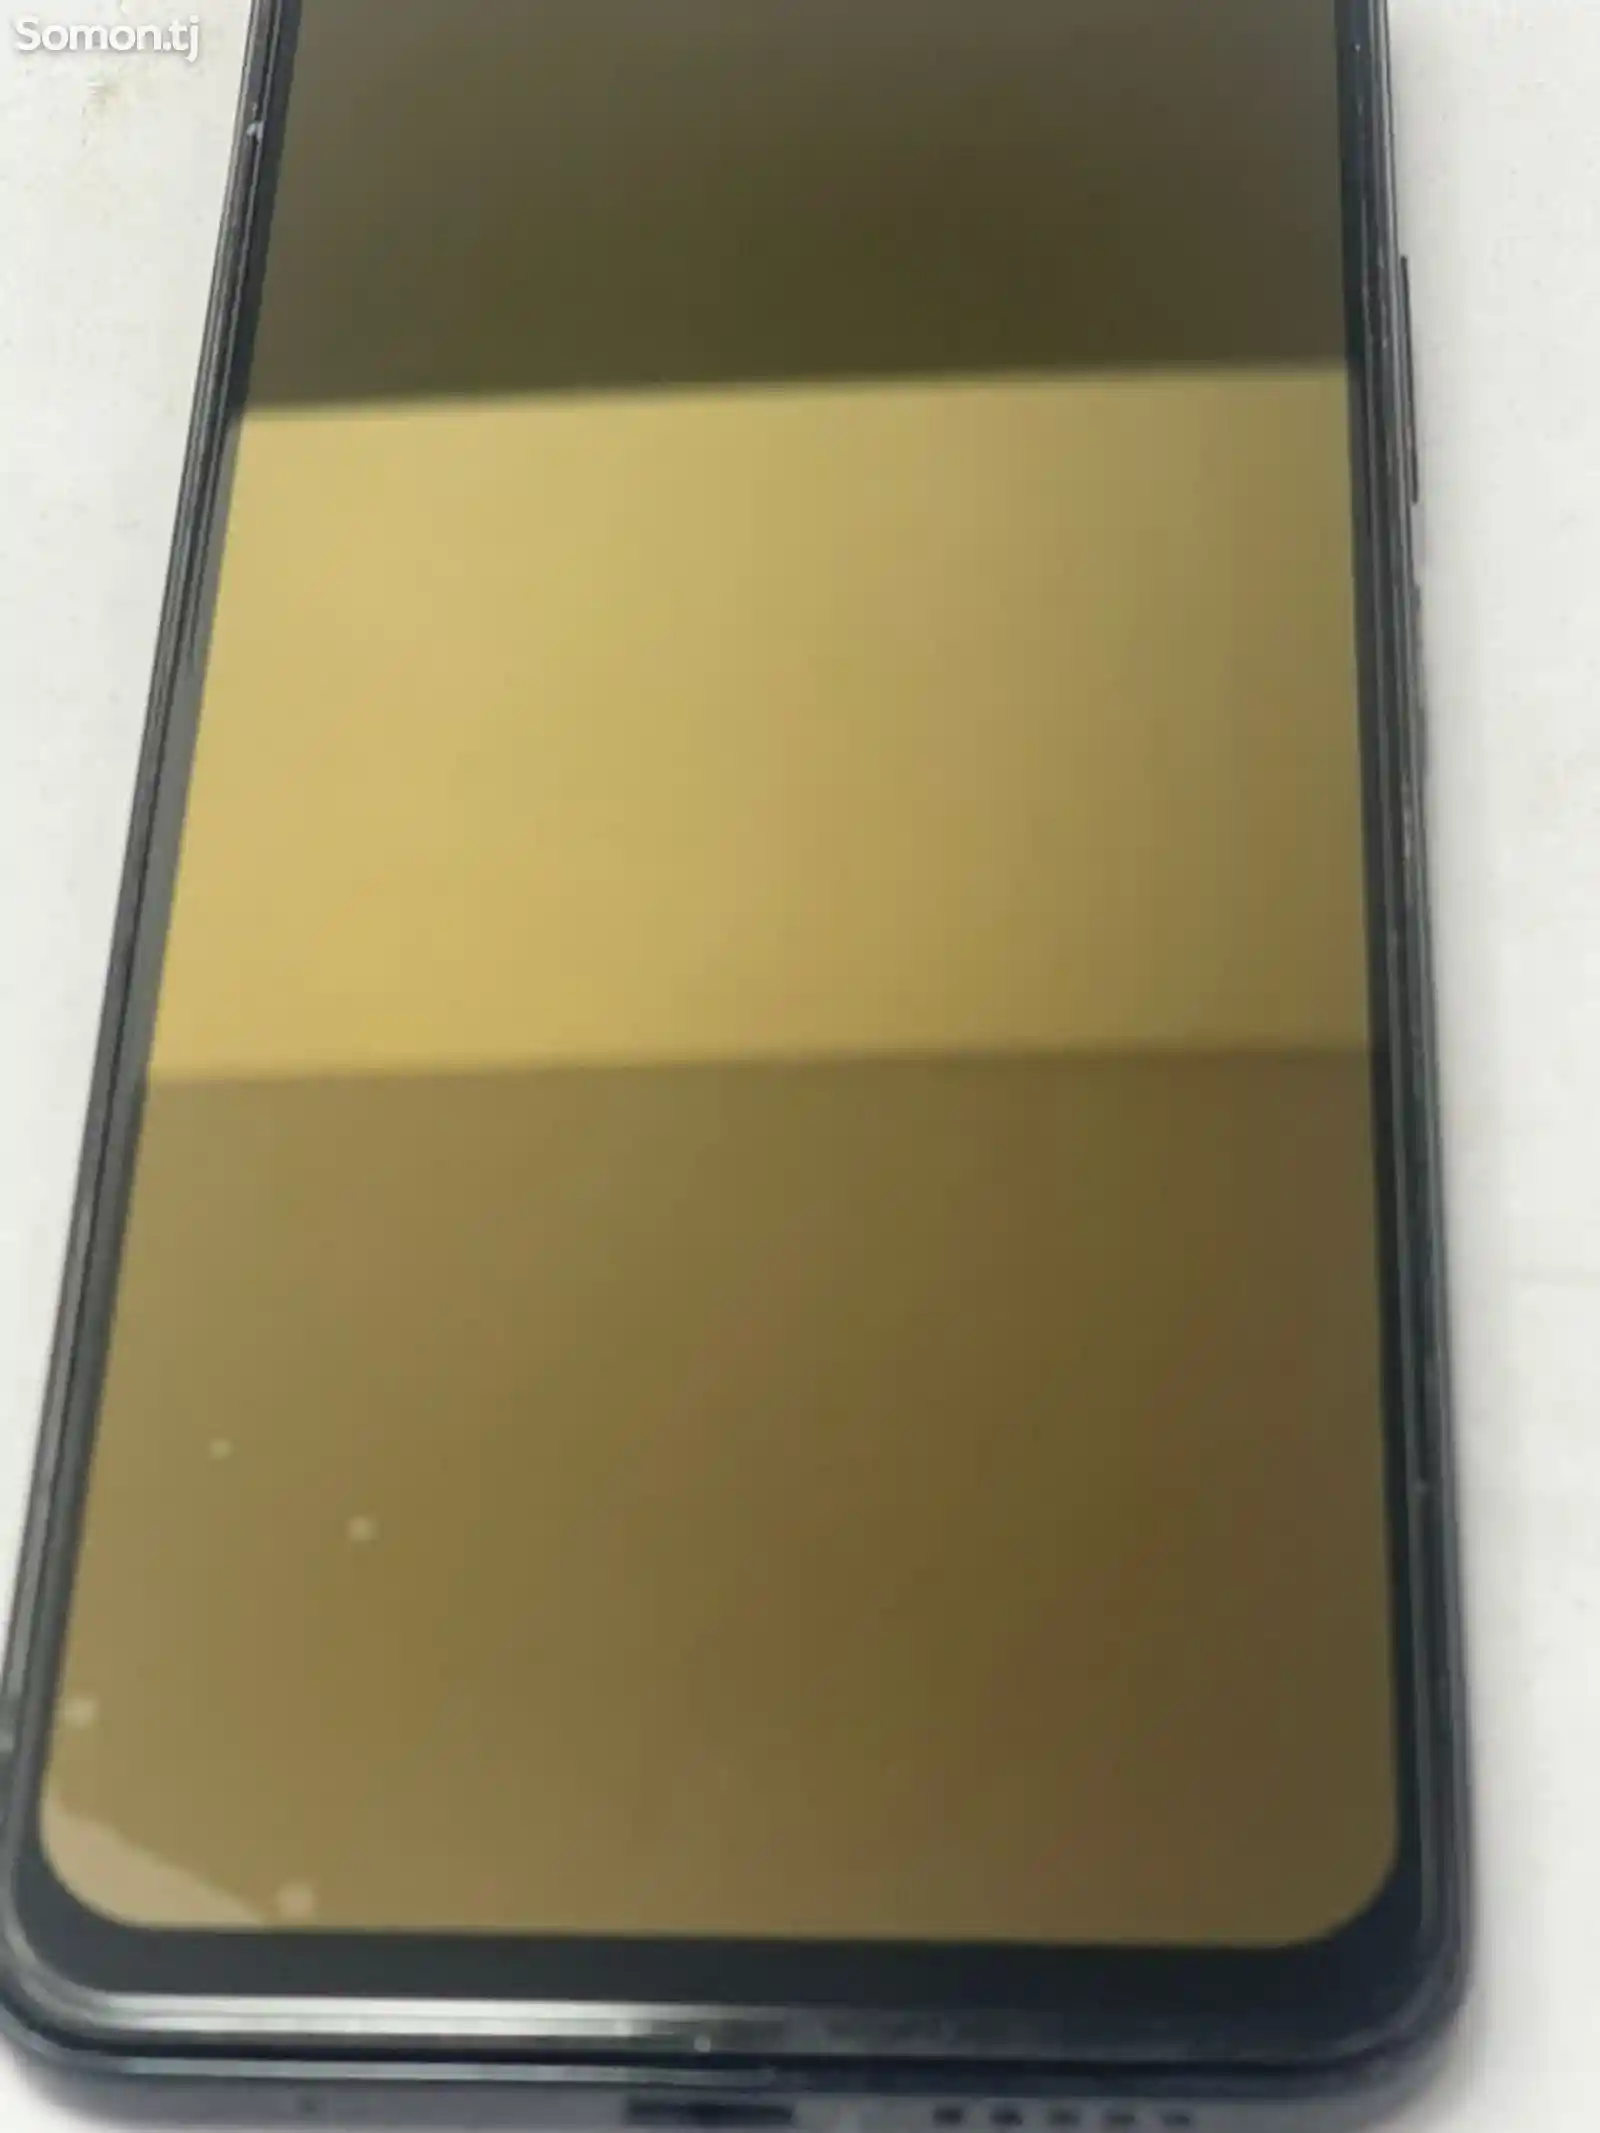 Xiaomi Redmi note 11-1